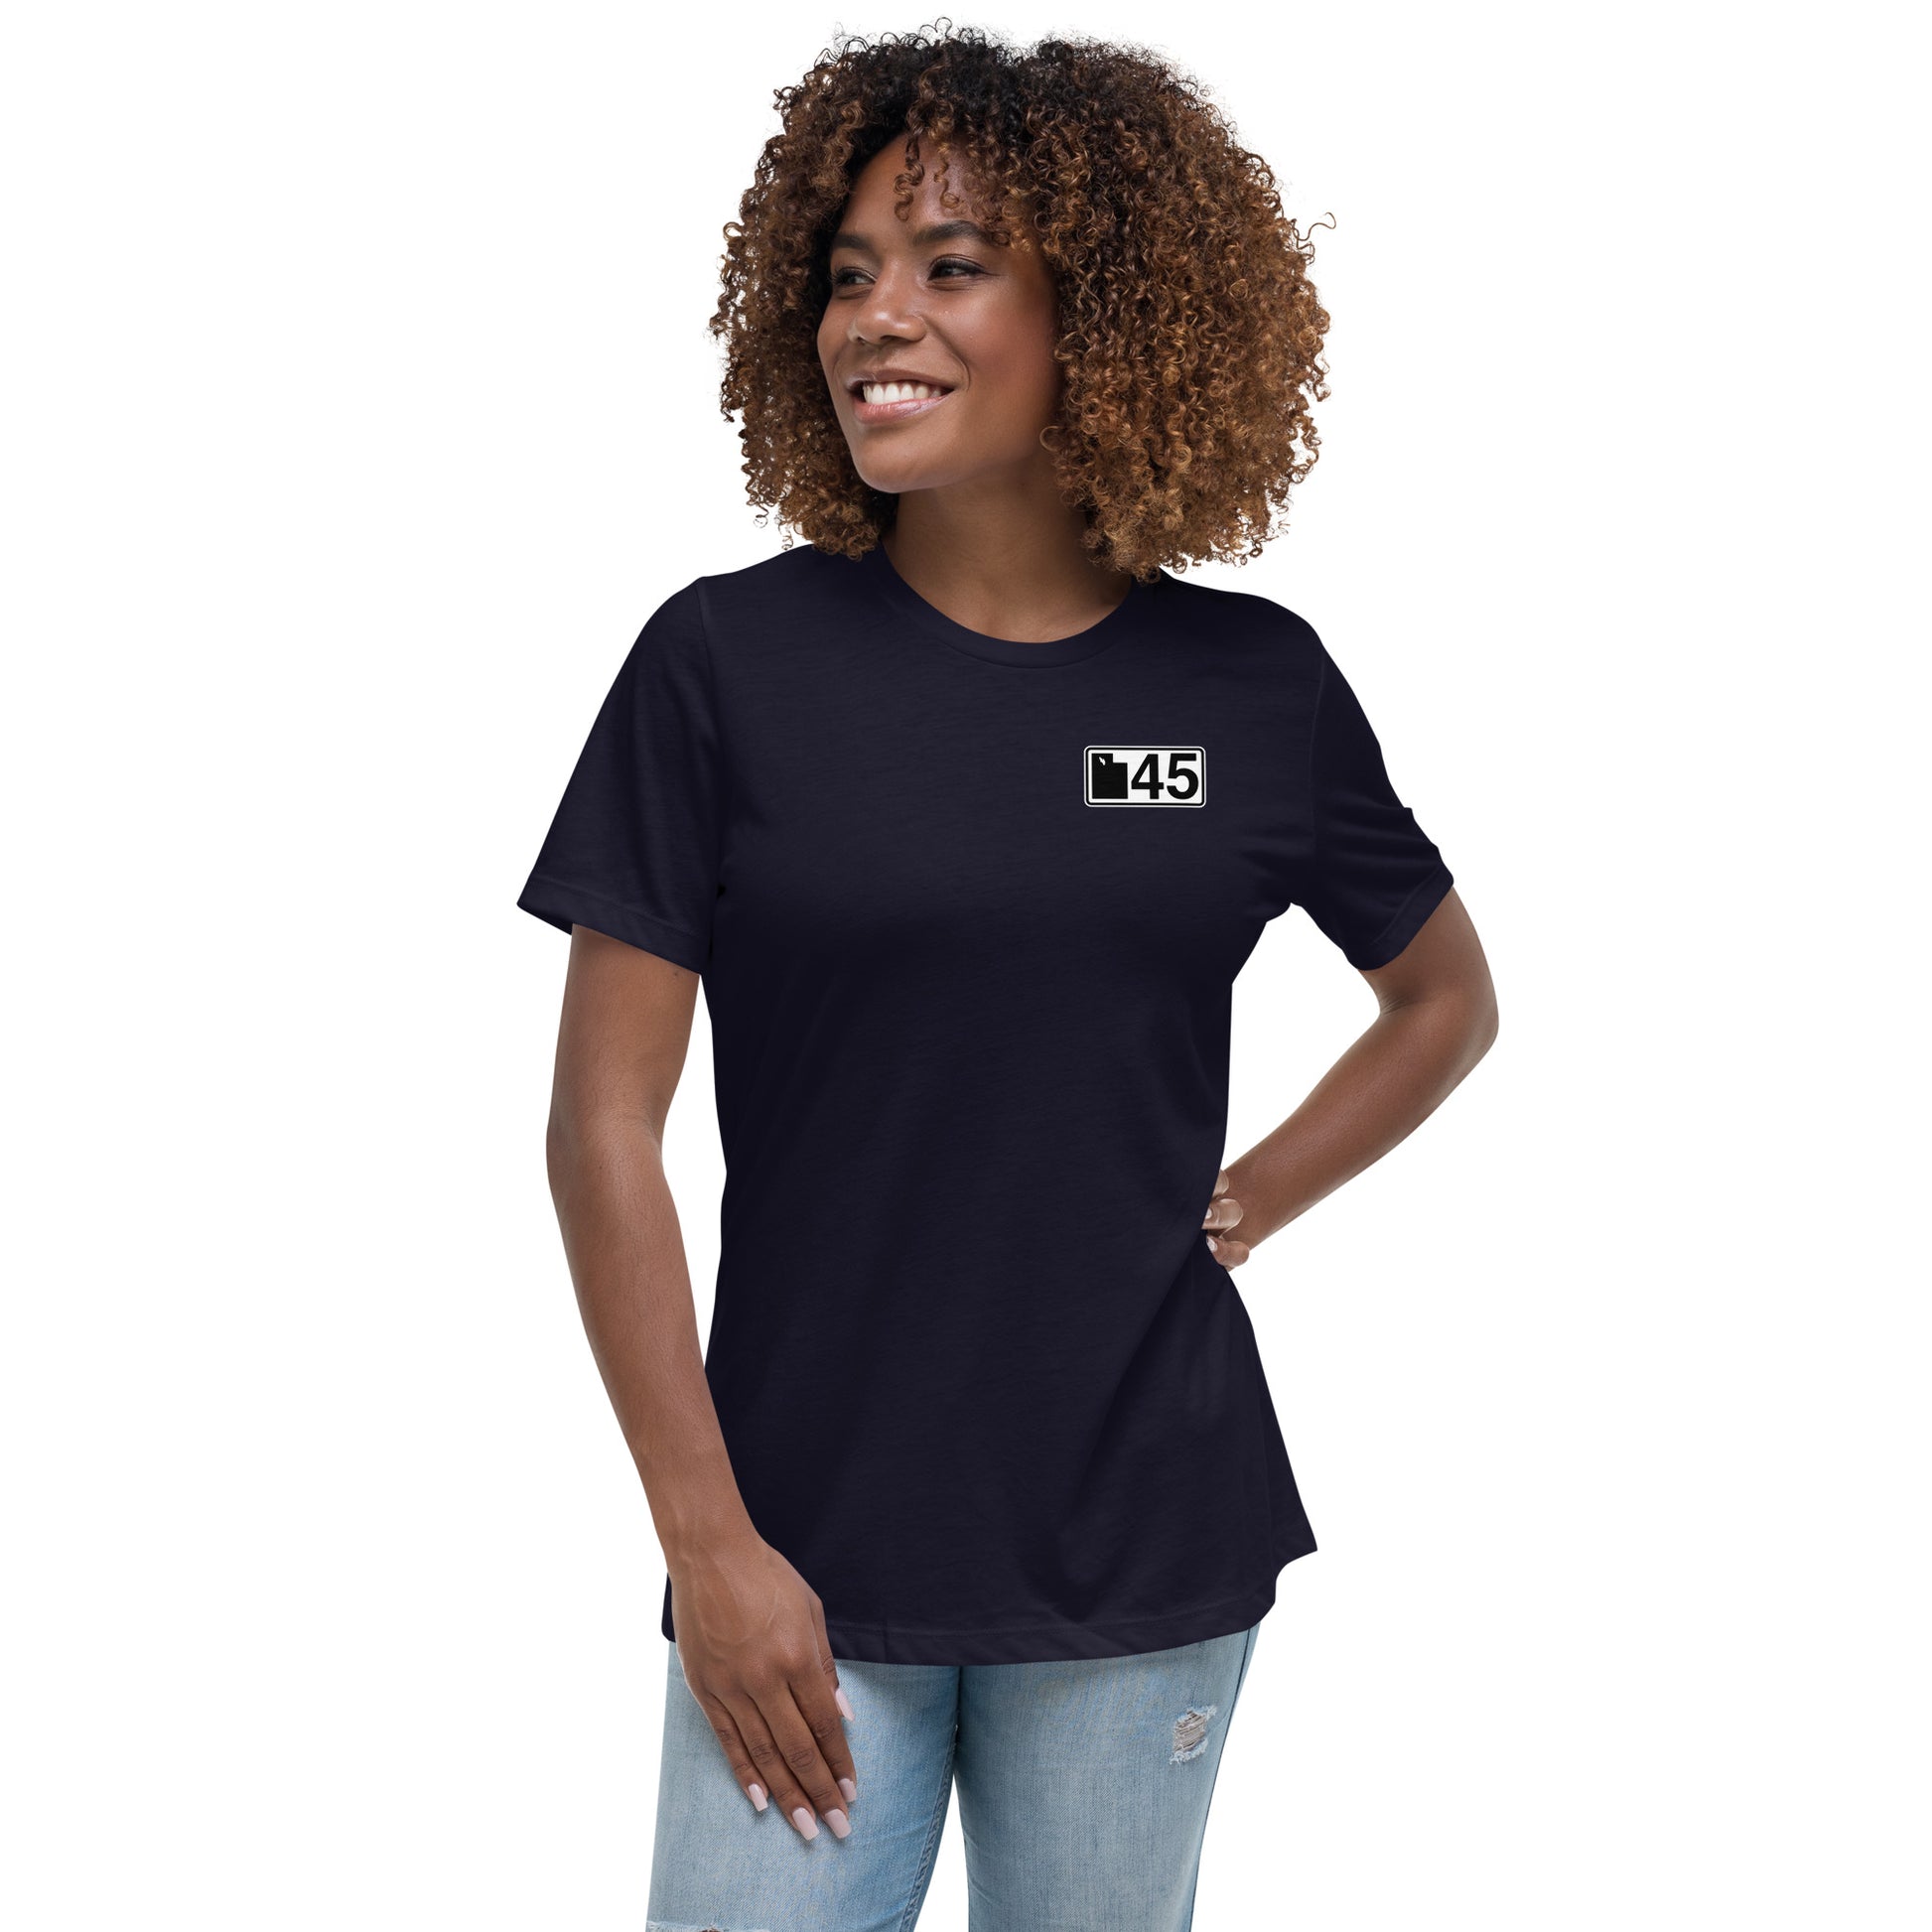 UT45 Womens T-Shirt – My Store